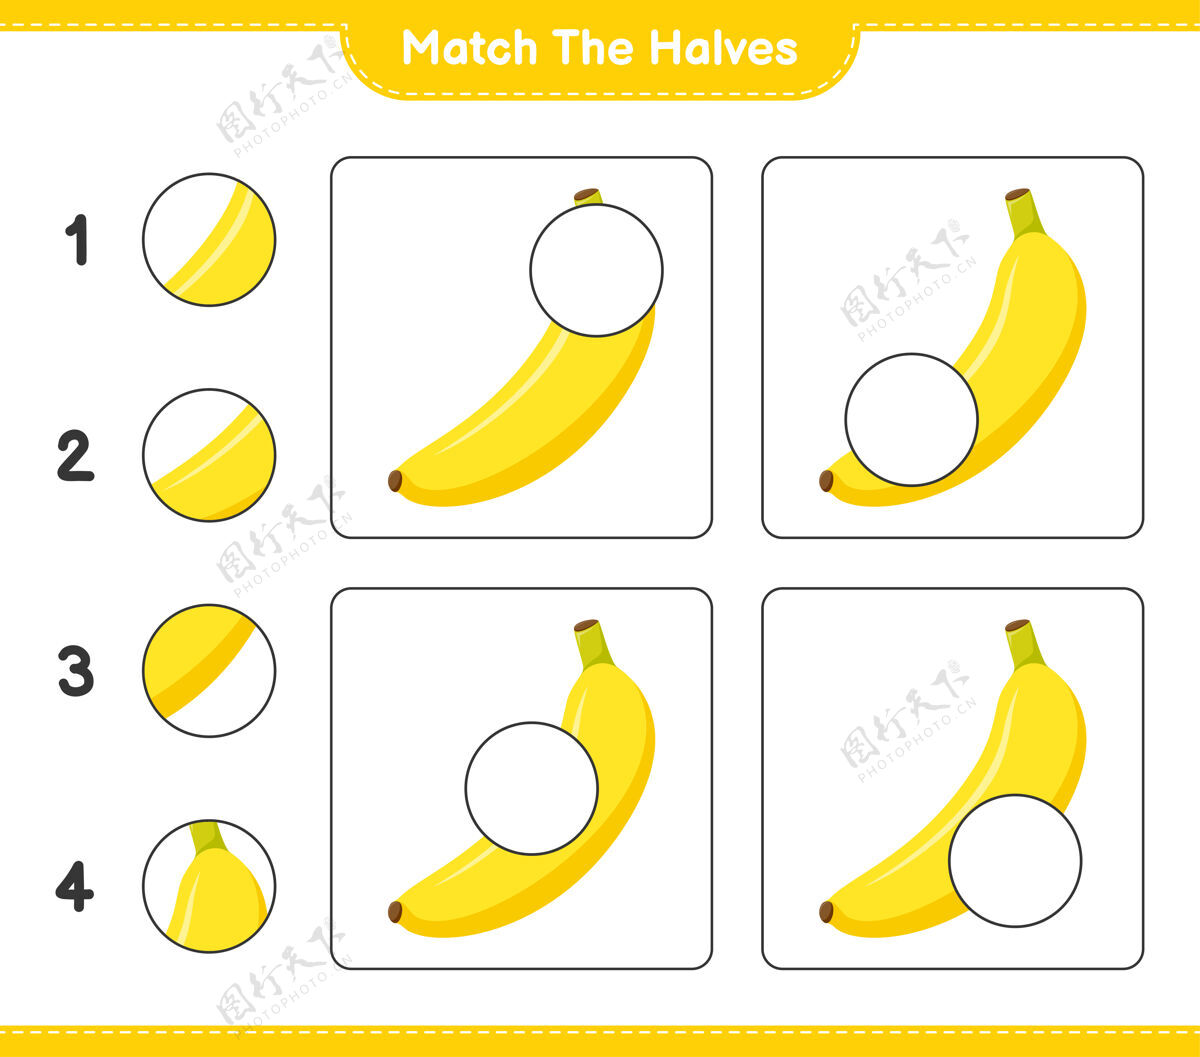 卡通匹配对半匹配一半香蕉.教育儿童游戏 可打印工作表游戏益智挑战